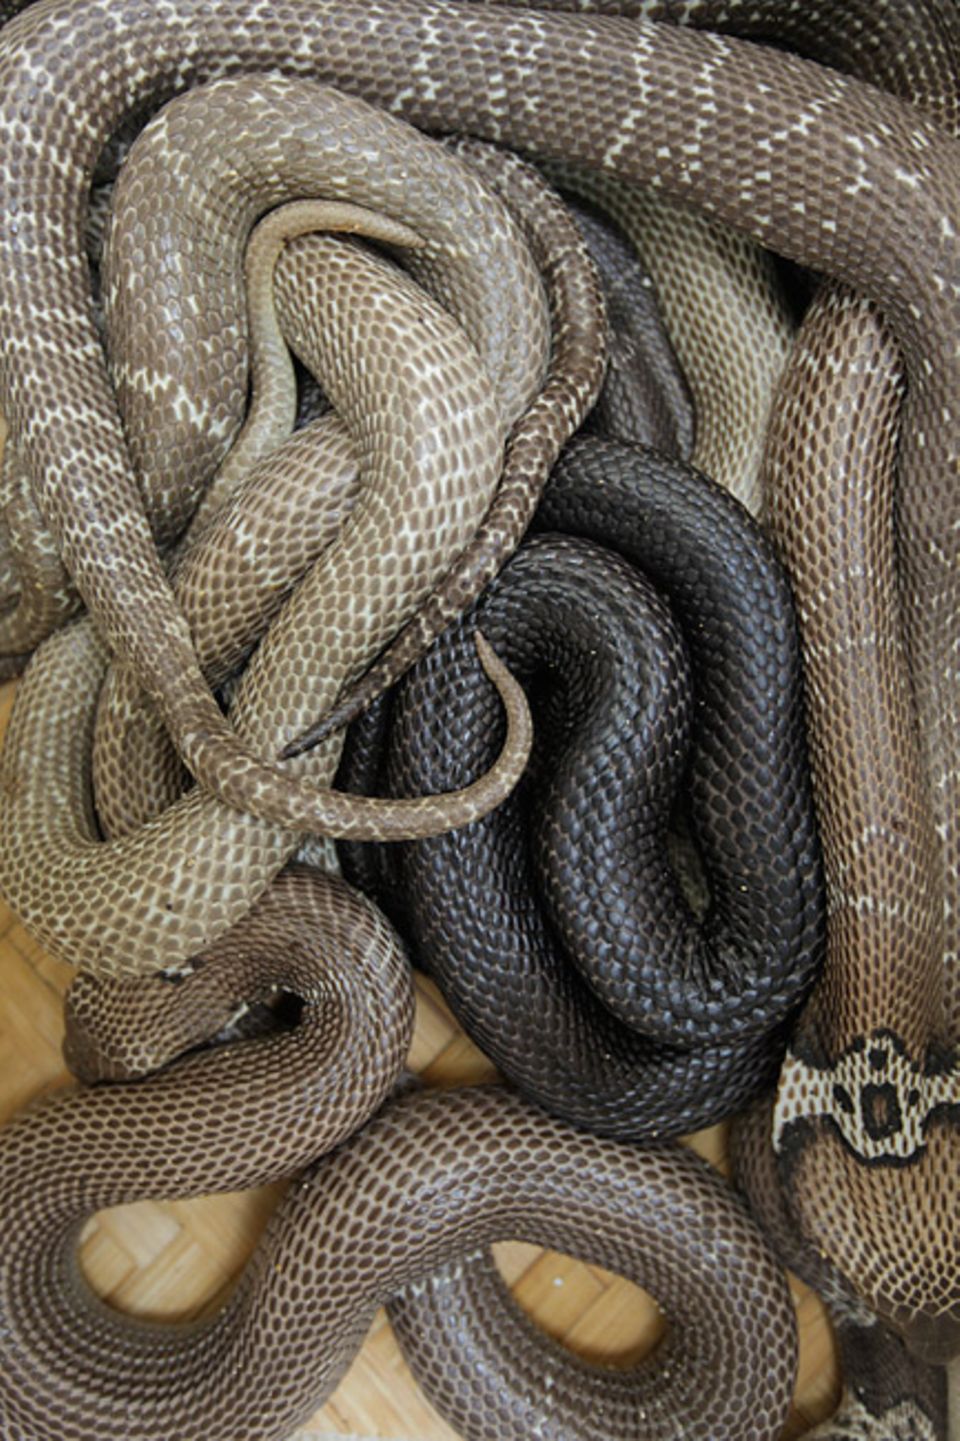 Im Norden Vietnams, im Dorf Vinh Son, werden Schlangen hauptsächlich wegen ihres Geschmacks und ihrer medizinischen Qualitäten geschätzt